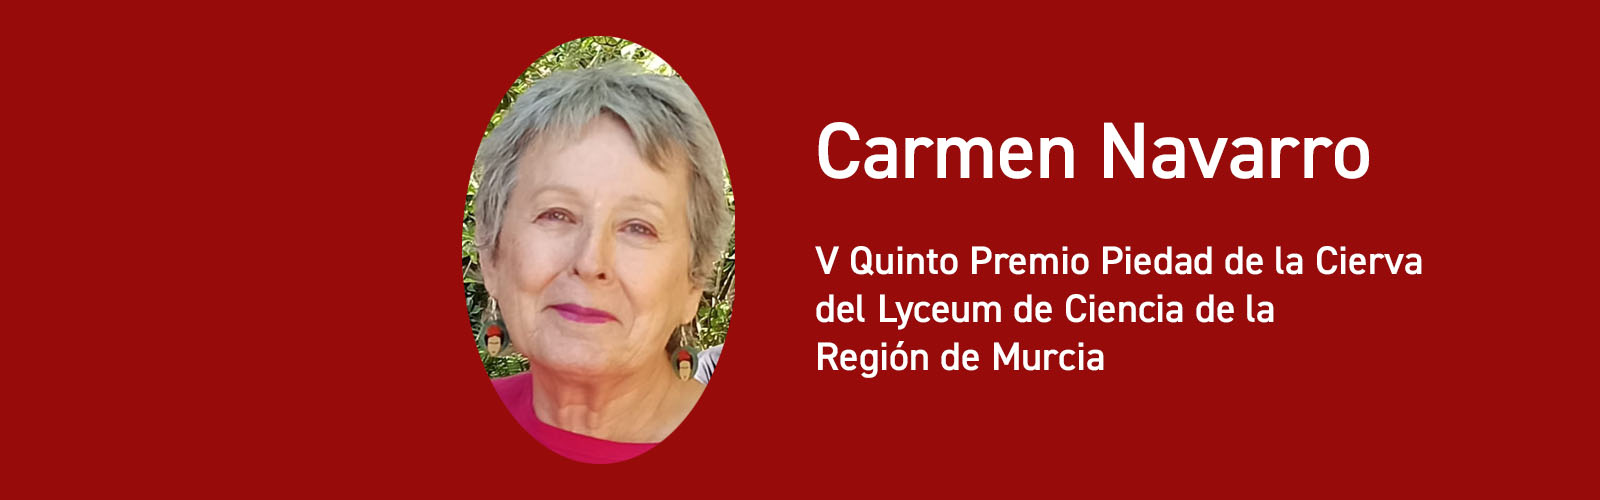 Carmen Navarro, profesora Jubilada de Medicina, recibe el V Premio Piedad de la Cierva de Lyceum